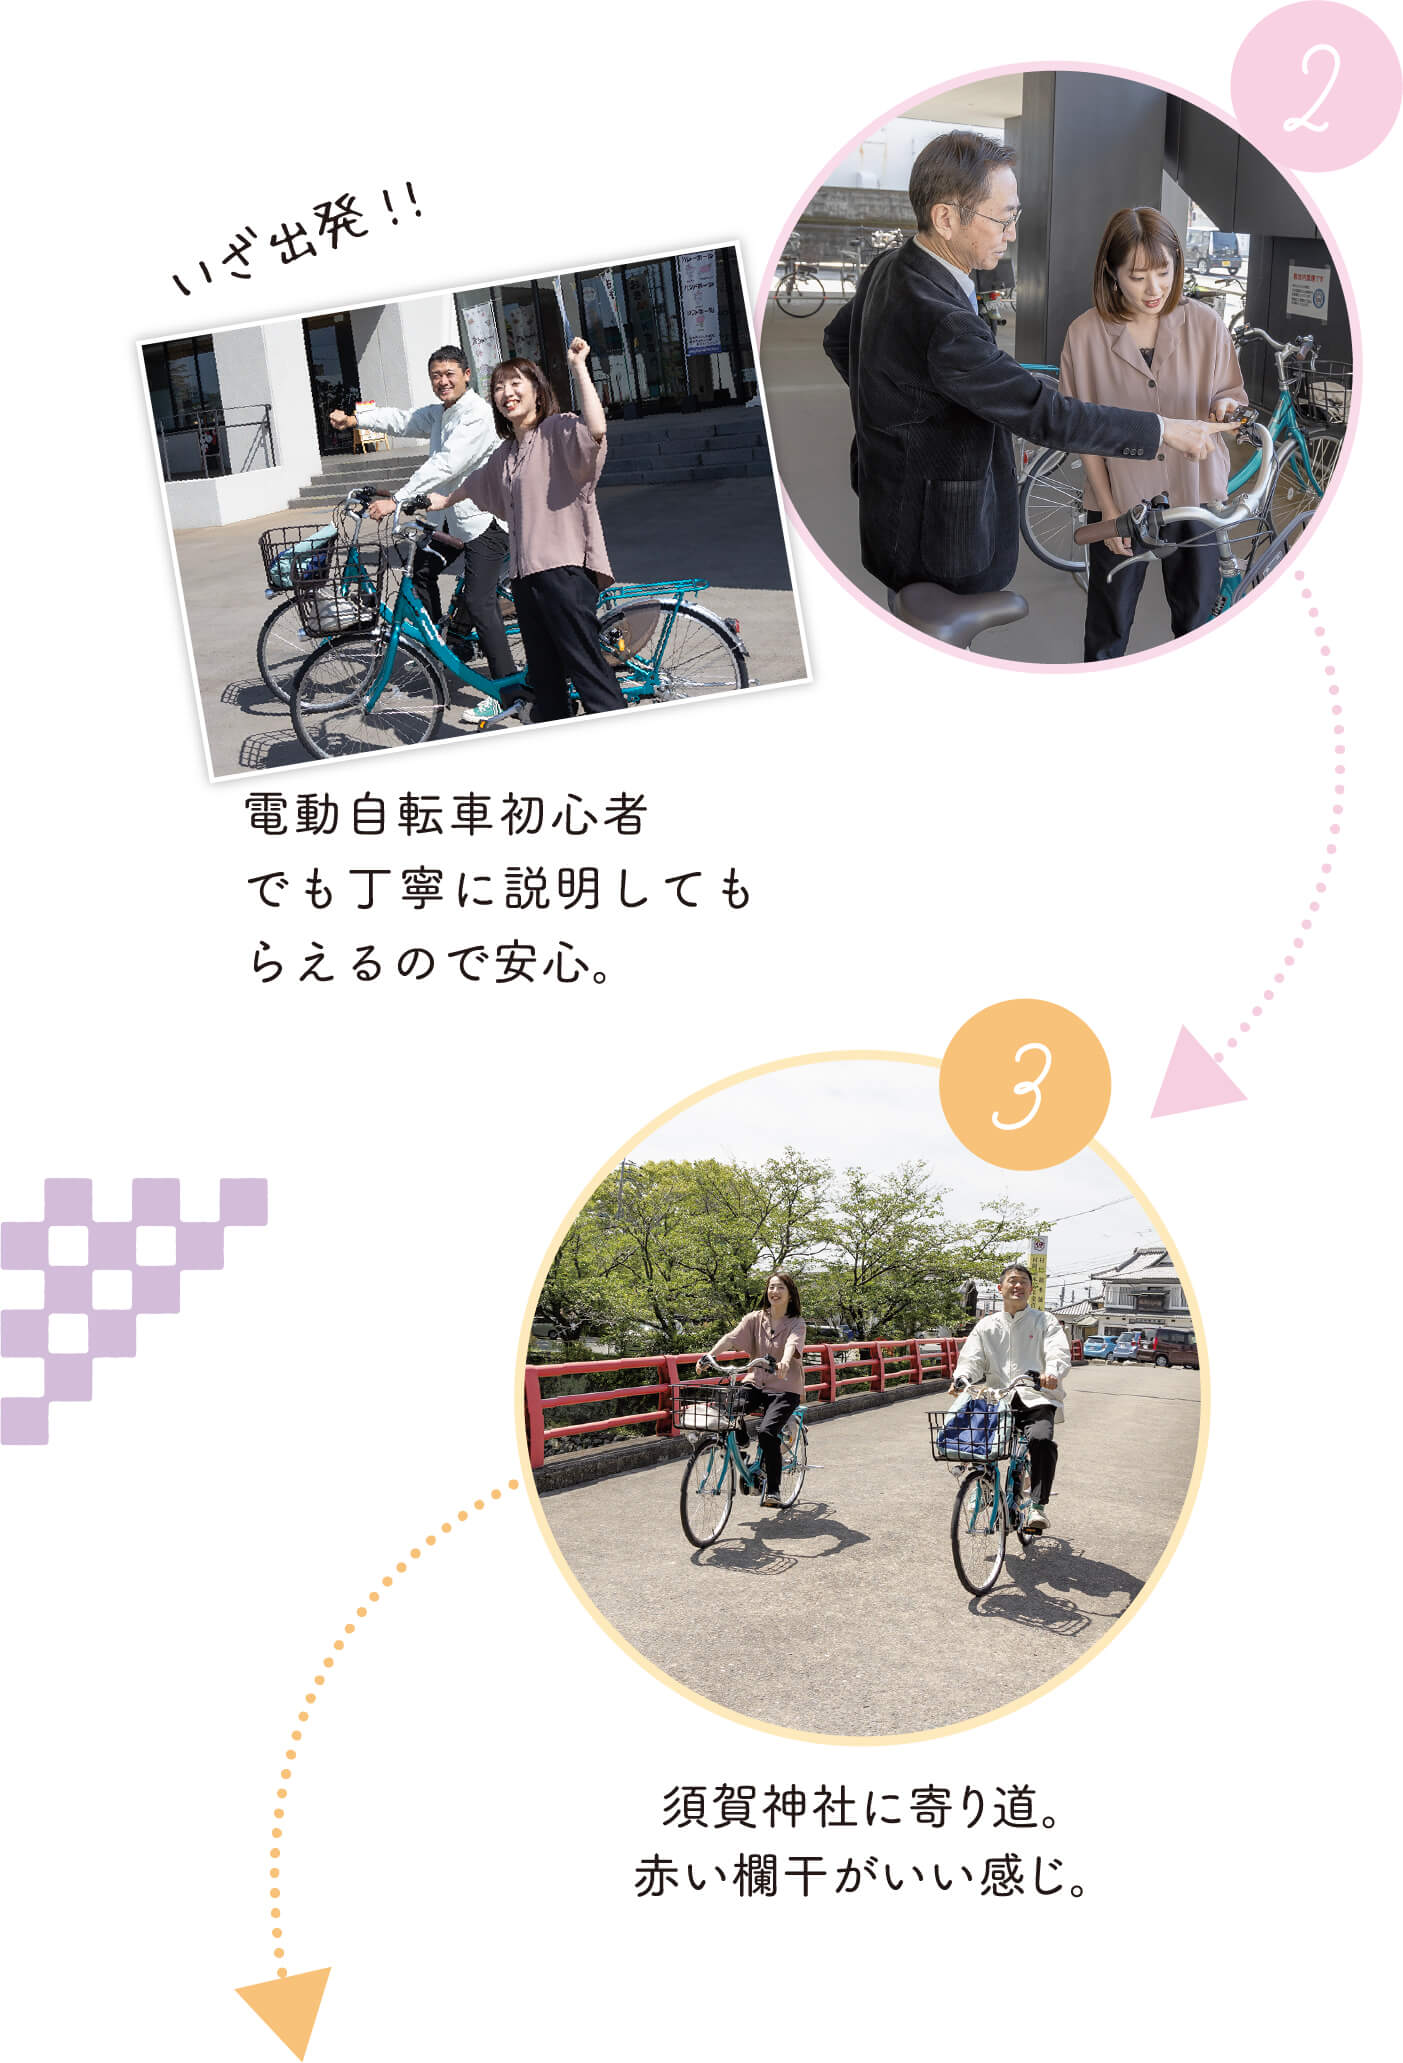 いざ出発！電動自転車初心者でも丁寧に説明してもらえるので安心。須賀神社に寄り道。赤い欄干がいい感じ。